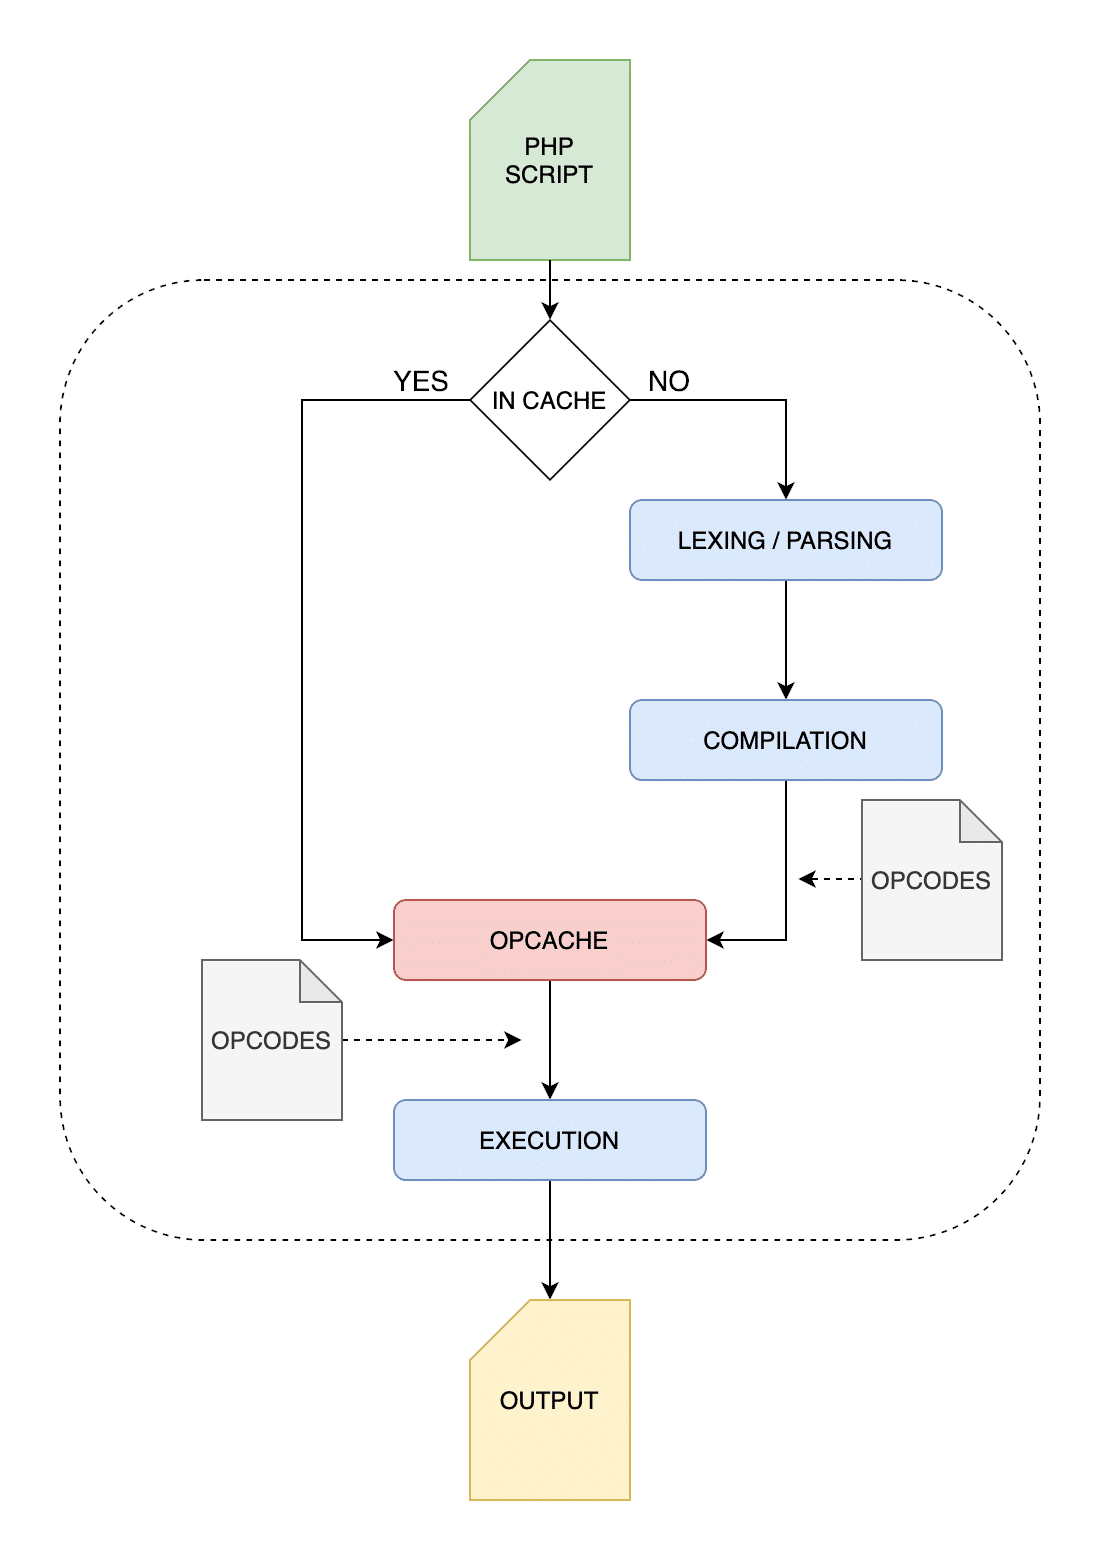 نحوه ی اجرای دستورات در صورت استفاده از opcache و کش کردن دستورات در PHP